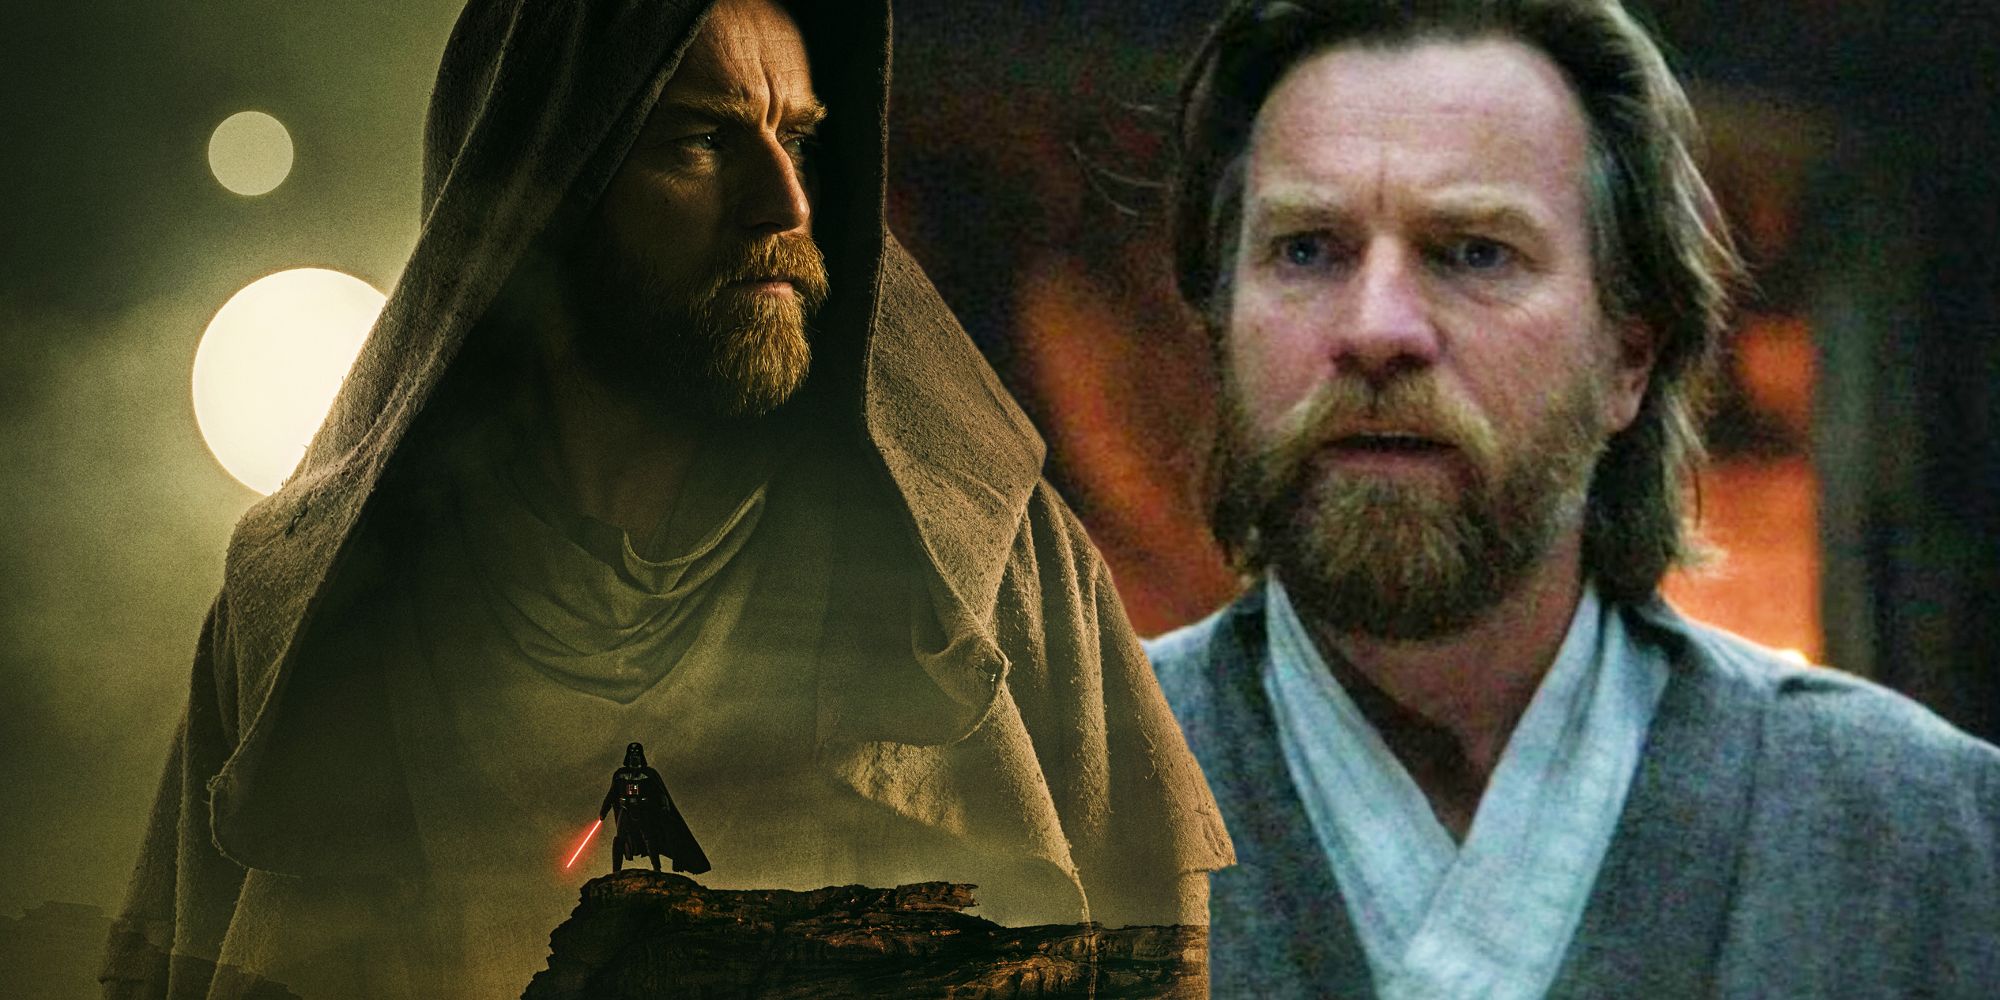 “Hay otros 10 años con muchas historias”: el director de Obi-Wan Kenobi sobre las ideas de Ewan McGregor para la temporada 2